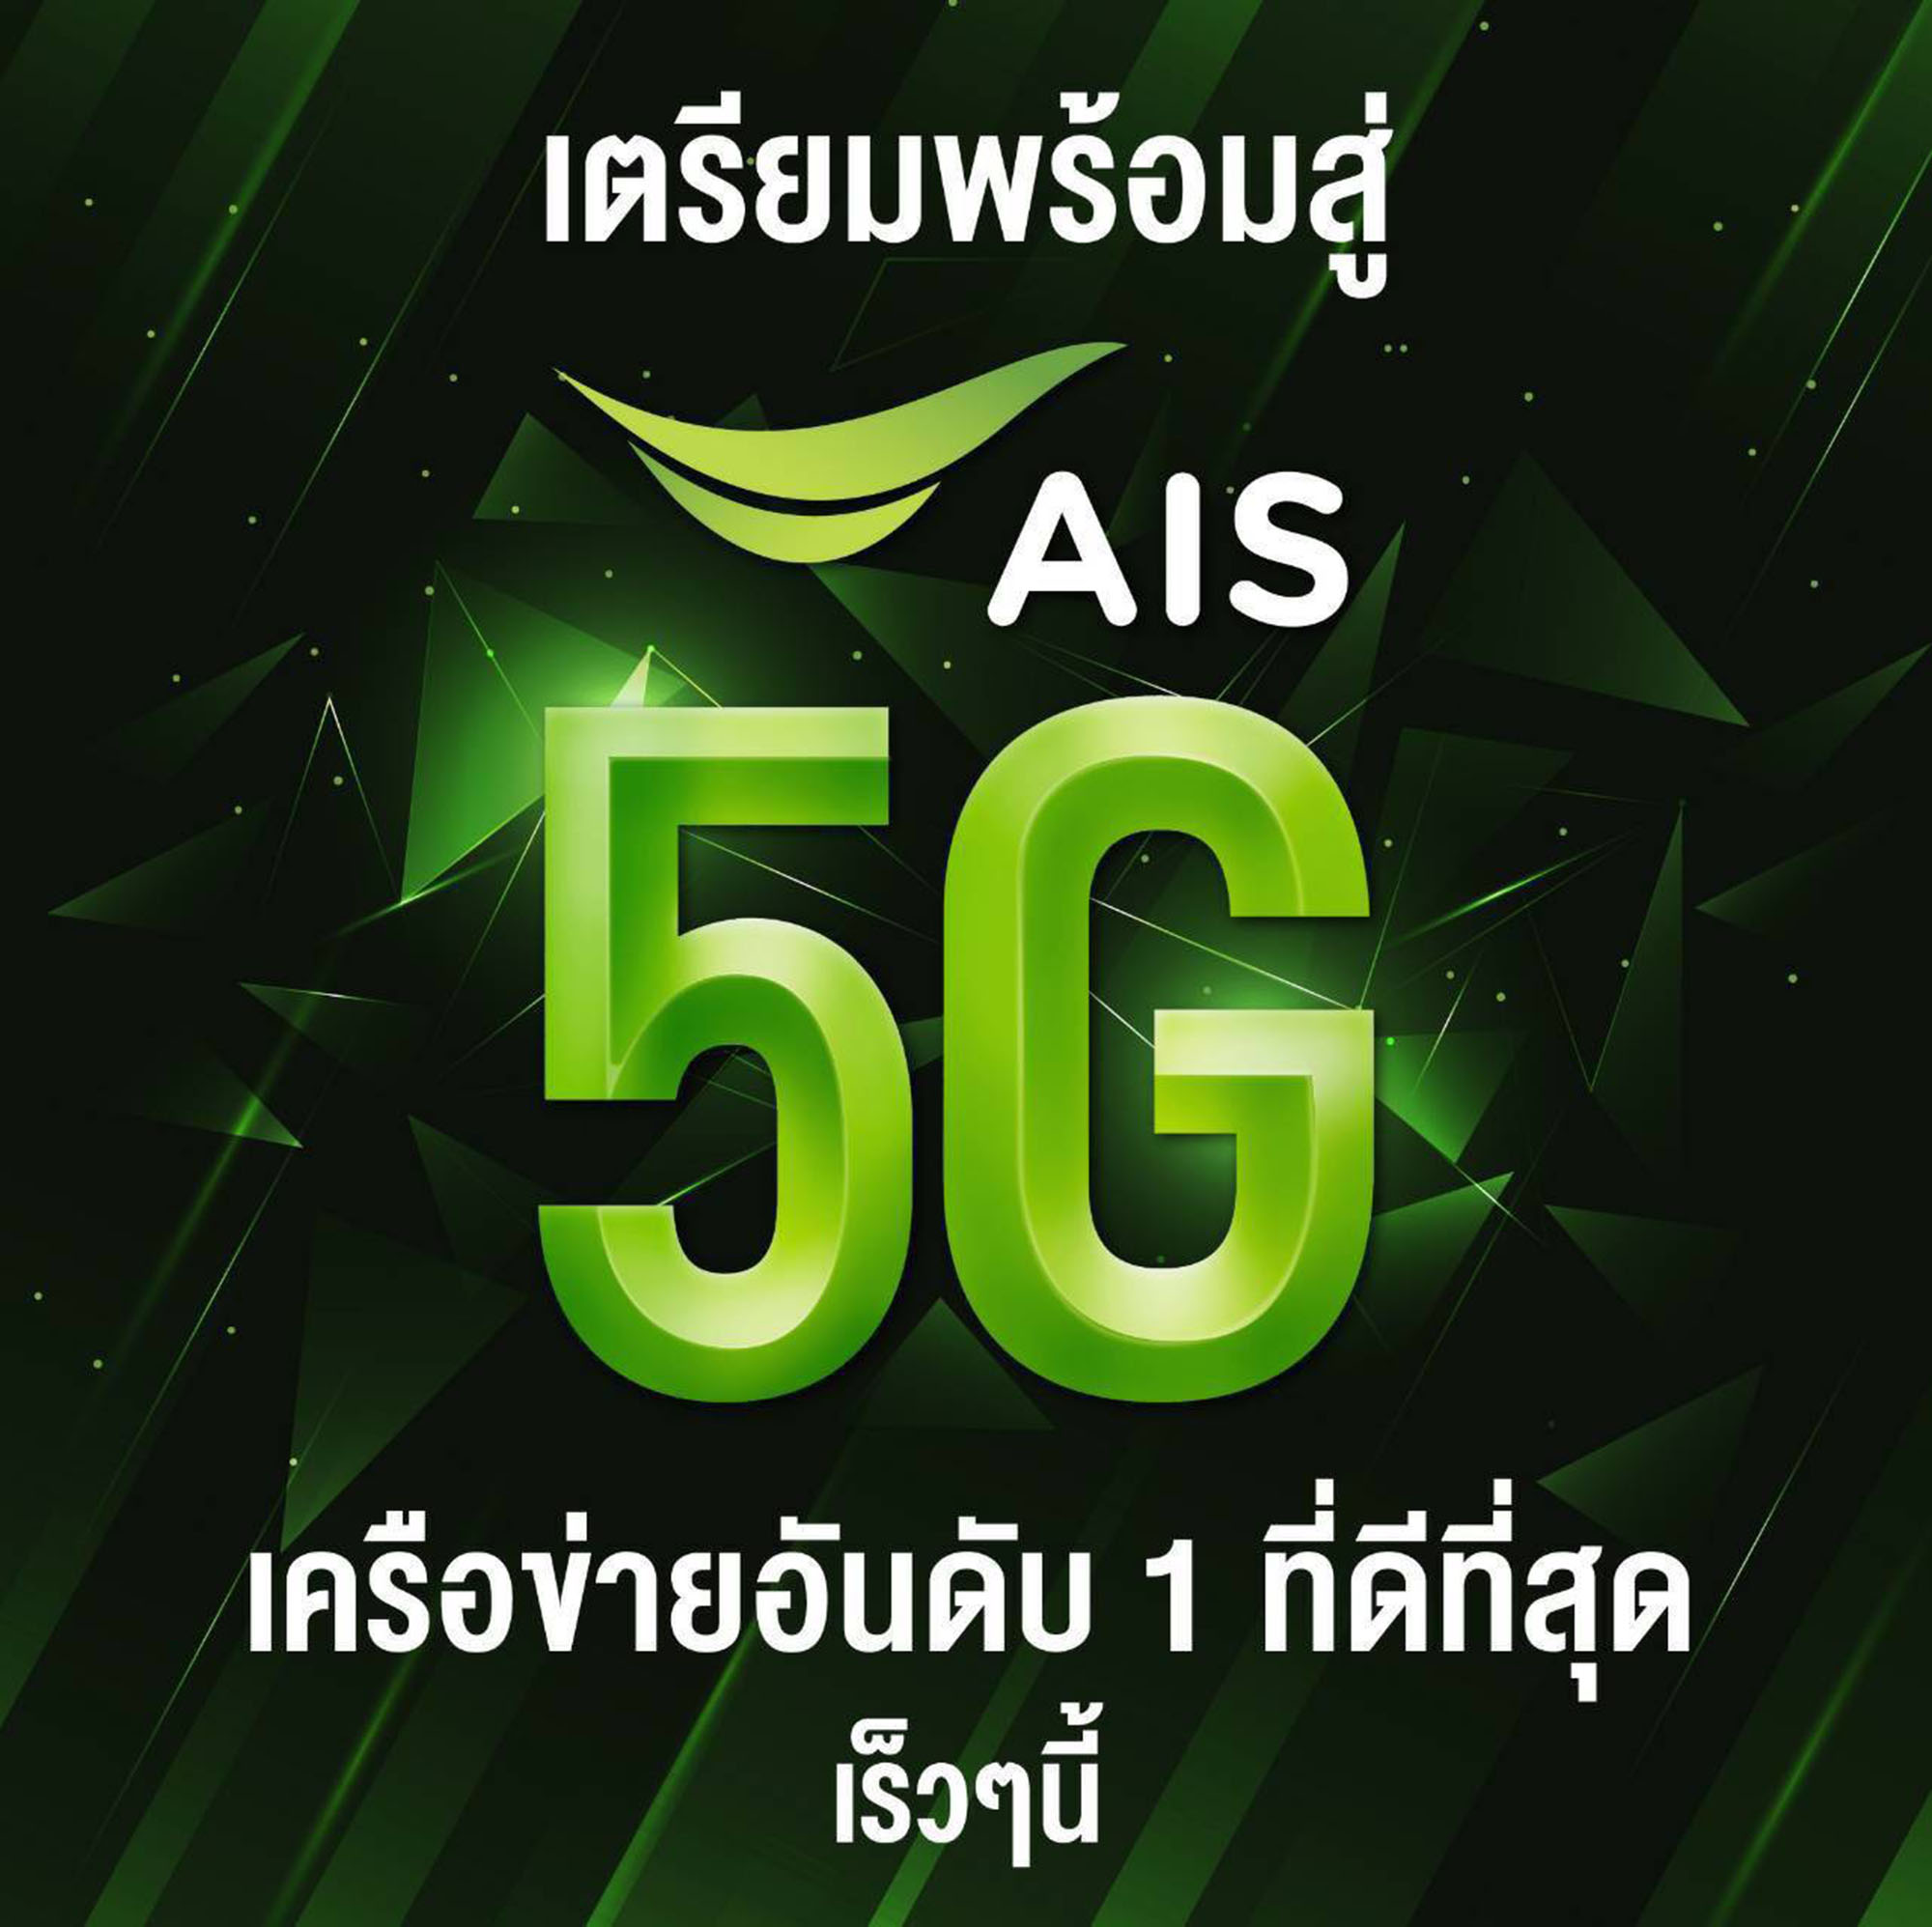 AIS ชนะการประมูล 5G คว้าคลื่นมากที่สุด ครบทั้ง 3 คลื่น